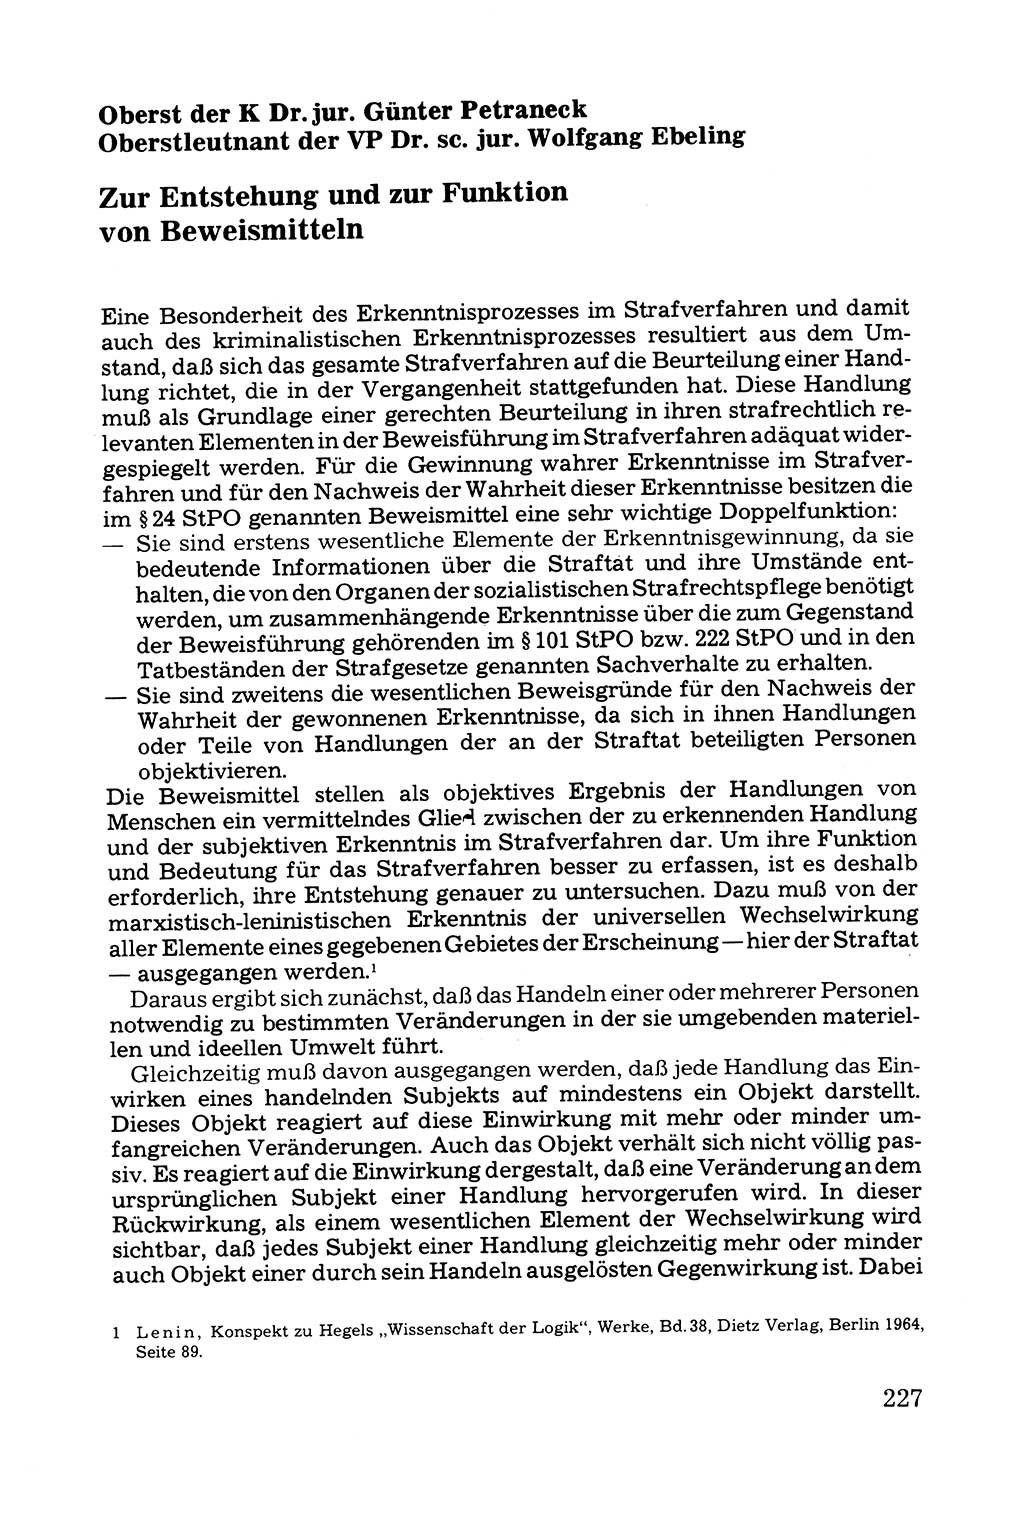 Grundfragen der Beweisführung im Ermittlungsverfahren [Deutsche Demokratische Republik (DDR)] 1980, Seite 227 (Bws.-Fhrg. EV DDR 1980, S. 227)